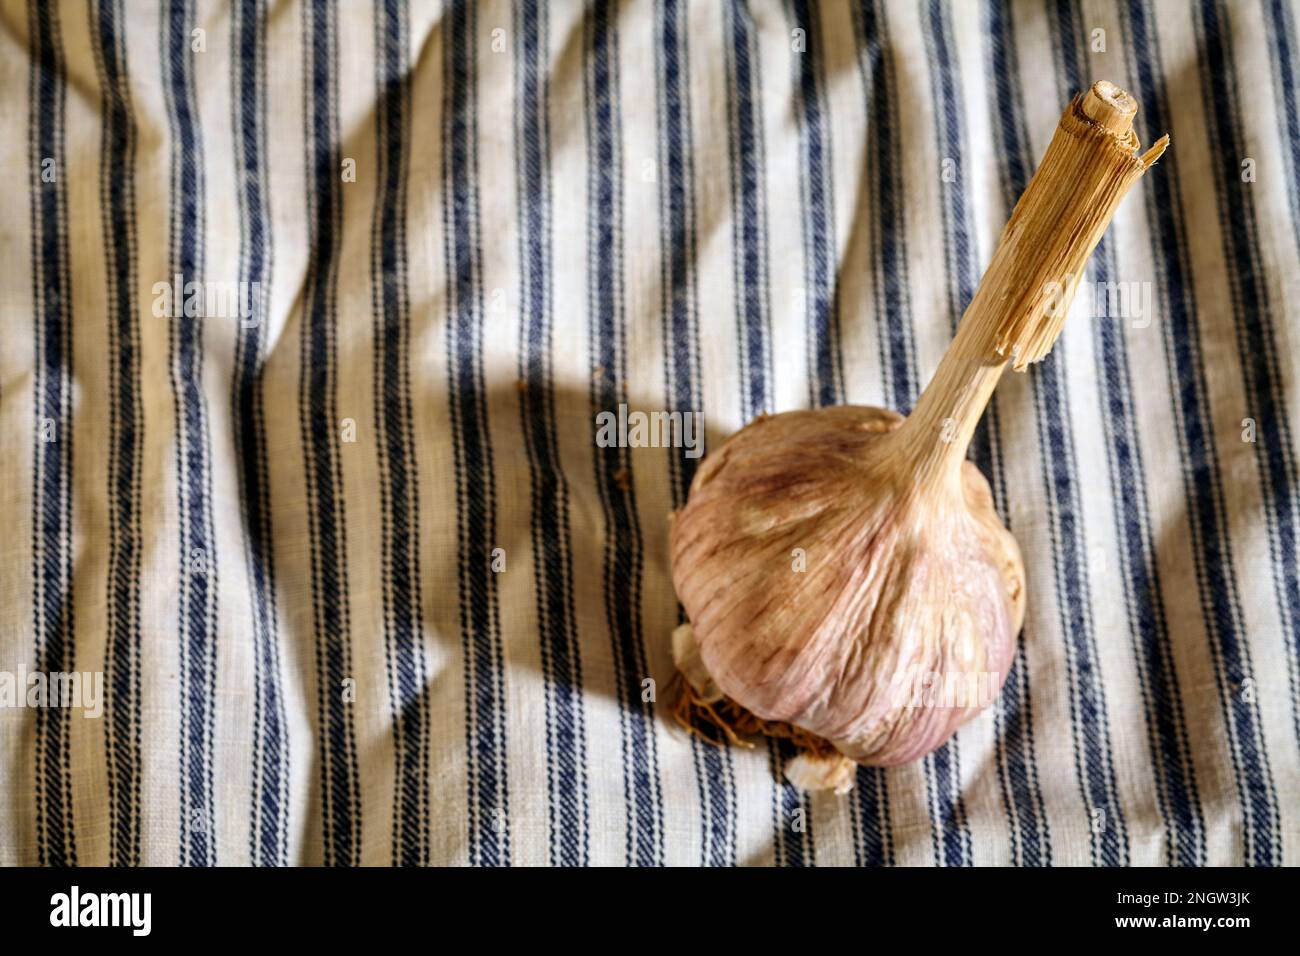 una testa intera di aglio fresco a collo lungo Foto Stock